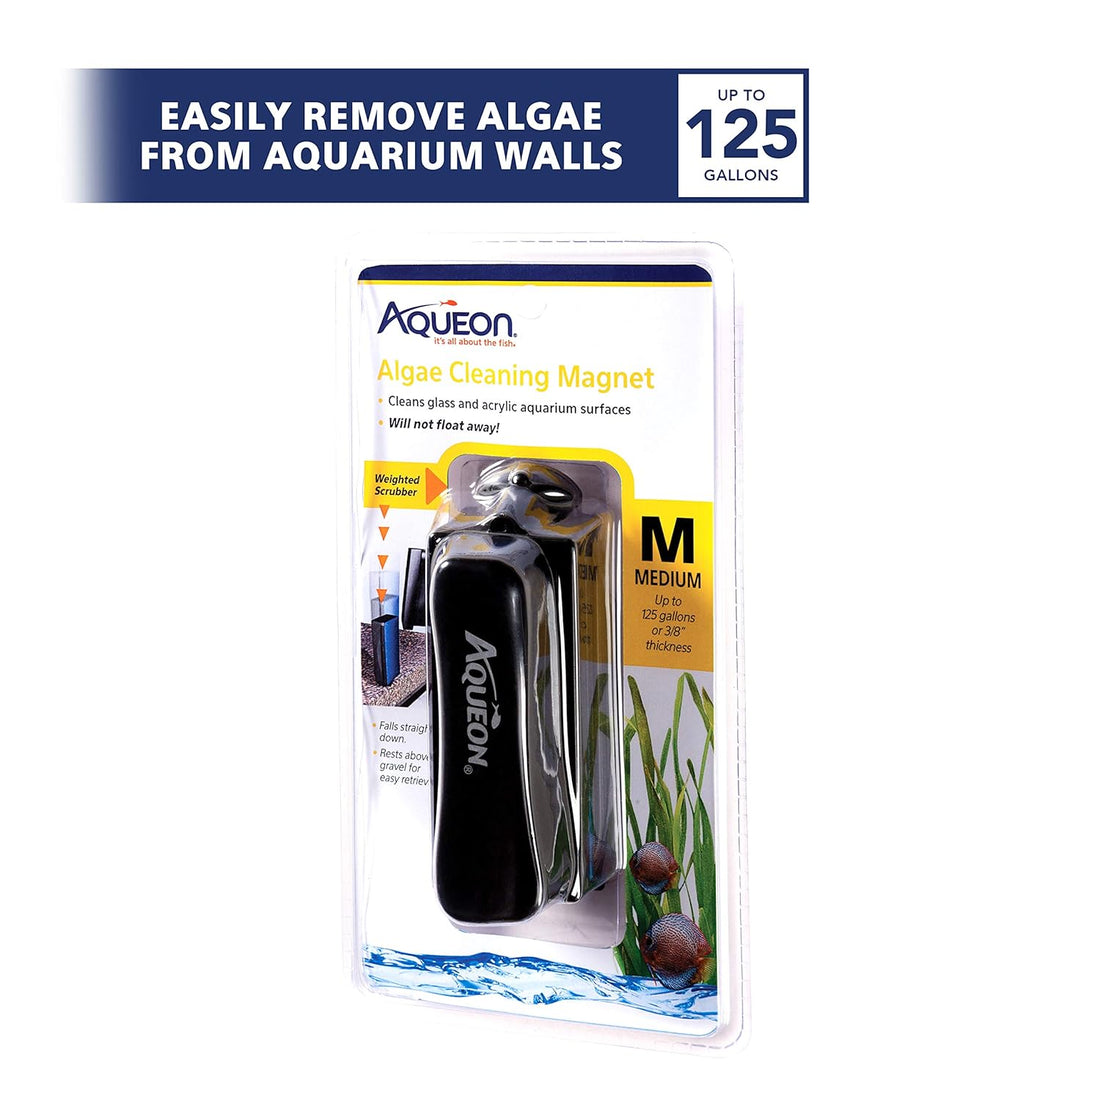 Aqueon 06171 Algae Cleaning Magnet, Medium